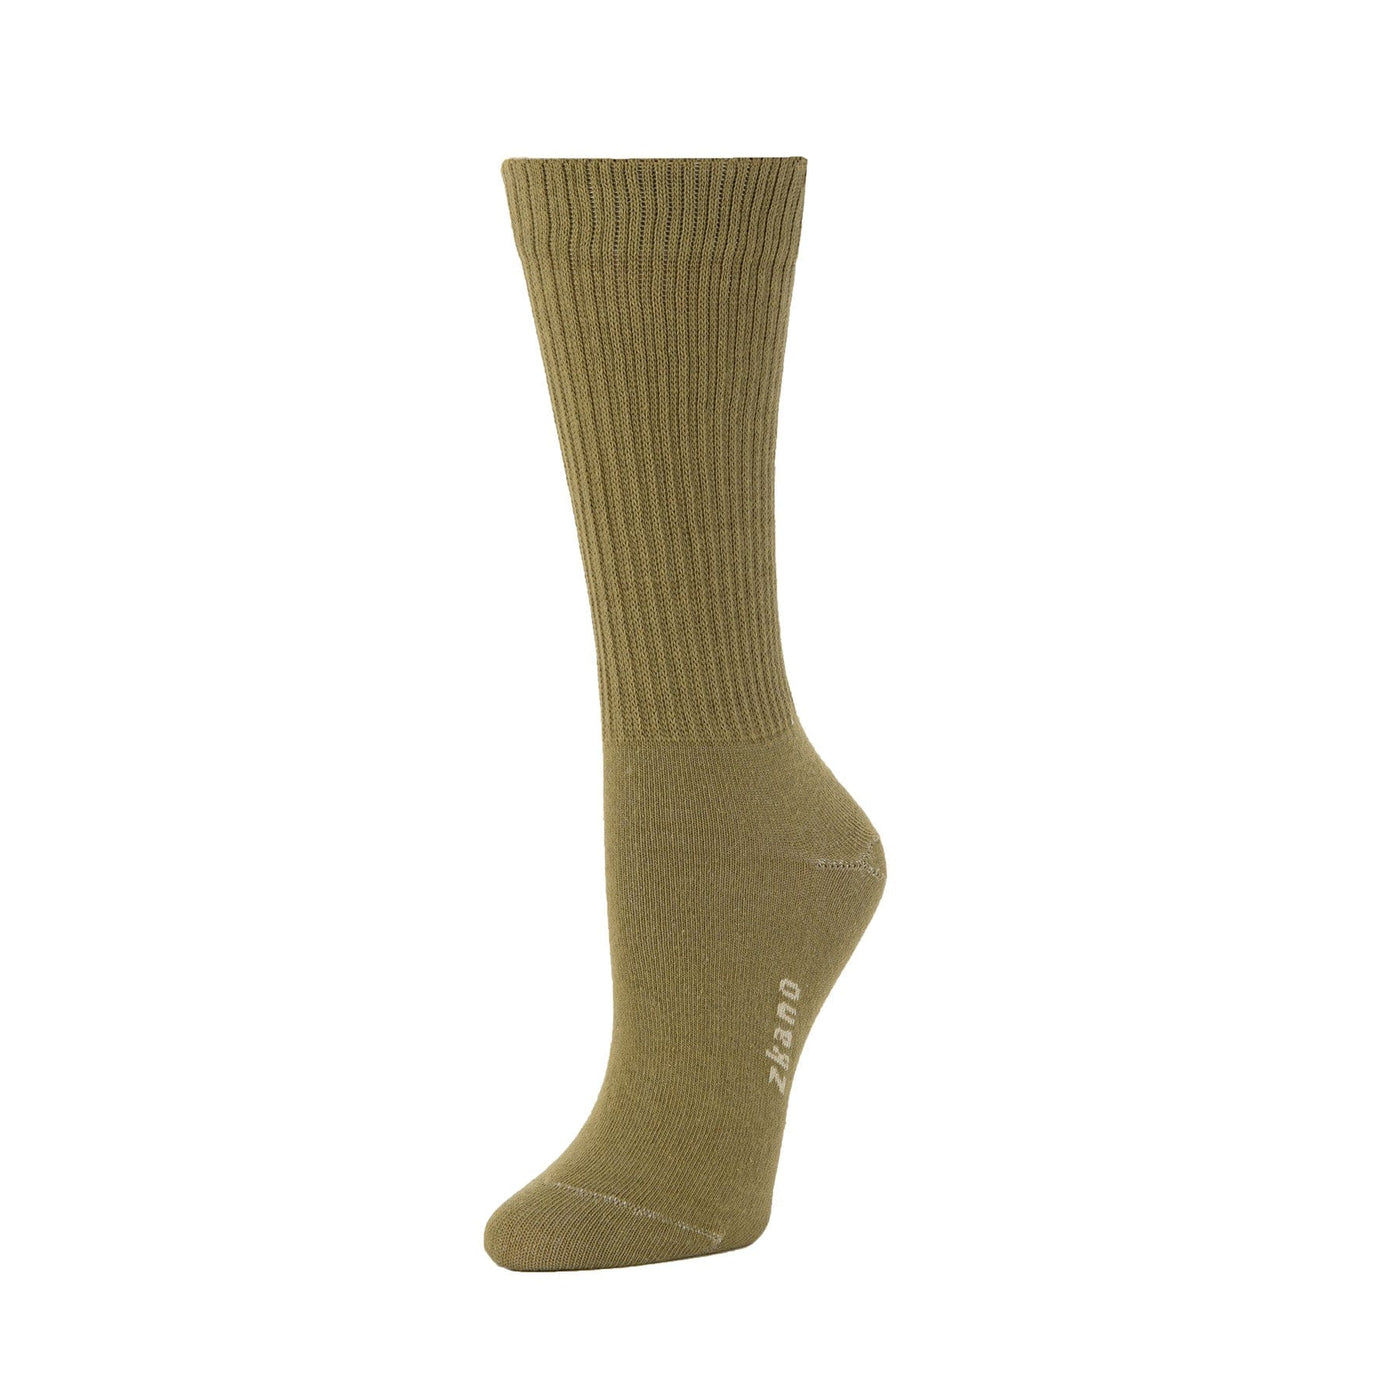 Zkano Crew Medium Rib knit - organic cotton crew socks - olivine organic-socks-made-in-usa